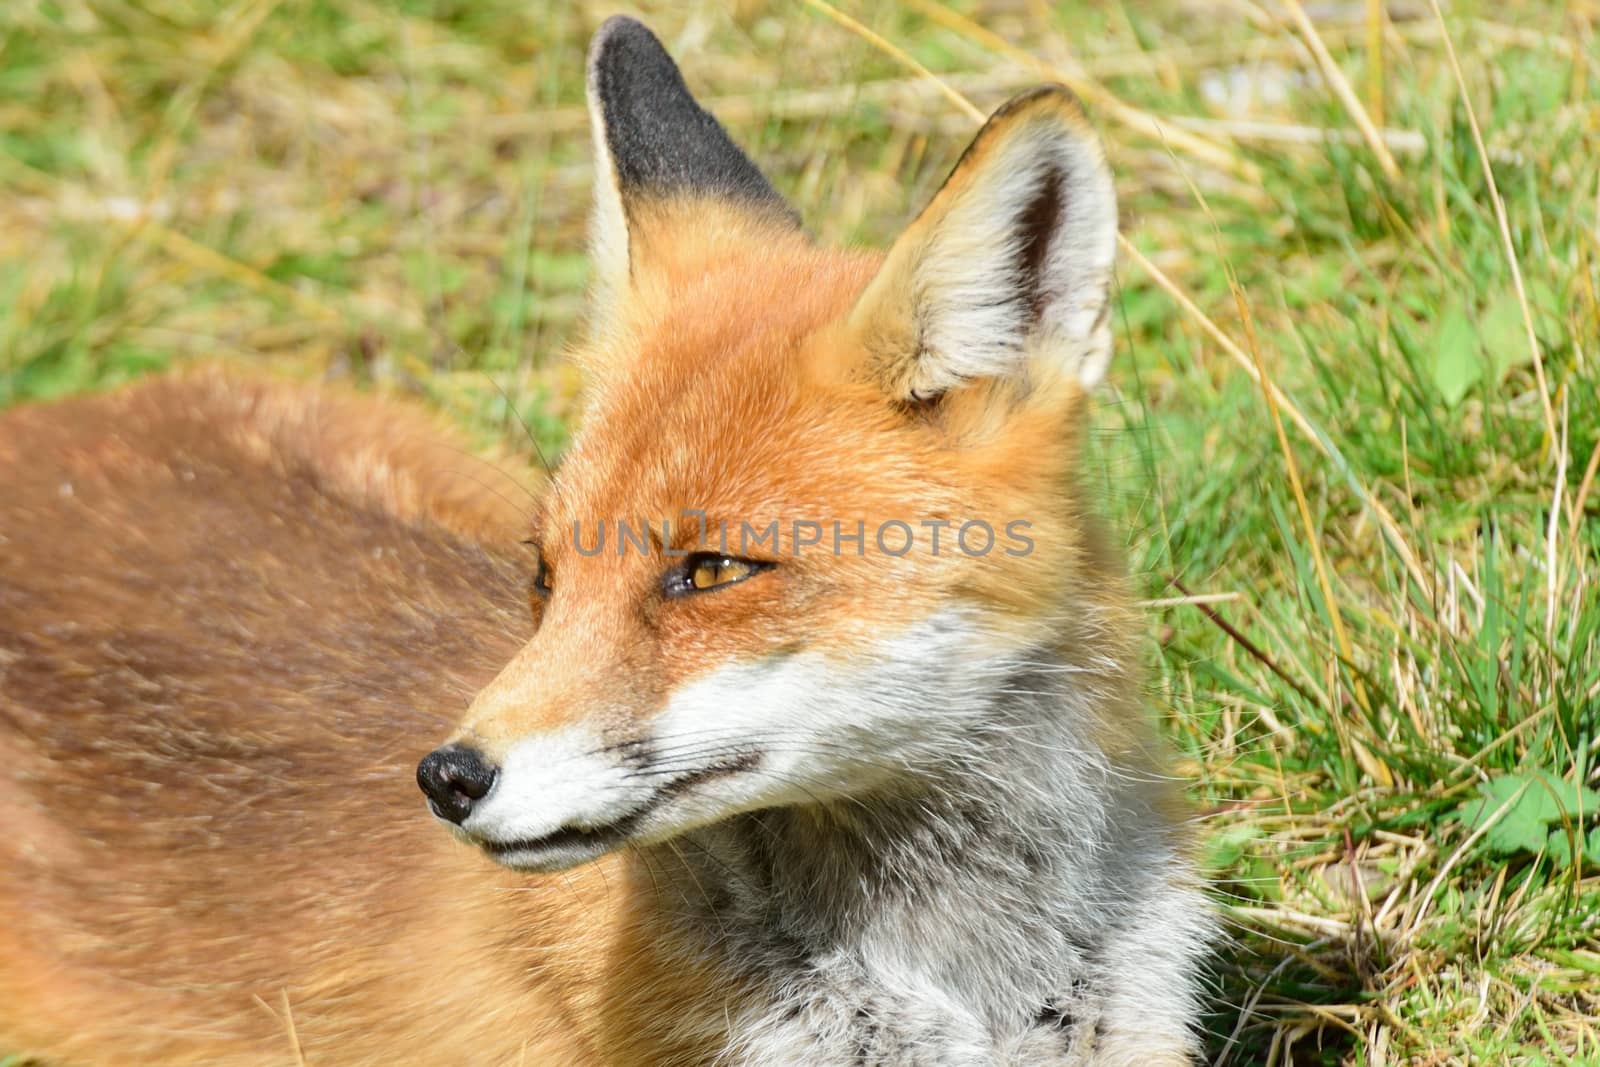 European Fox in portrait